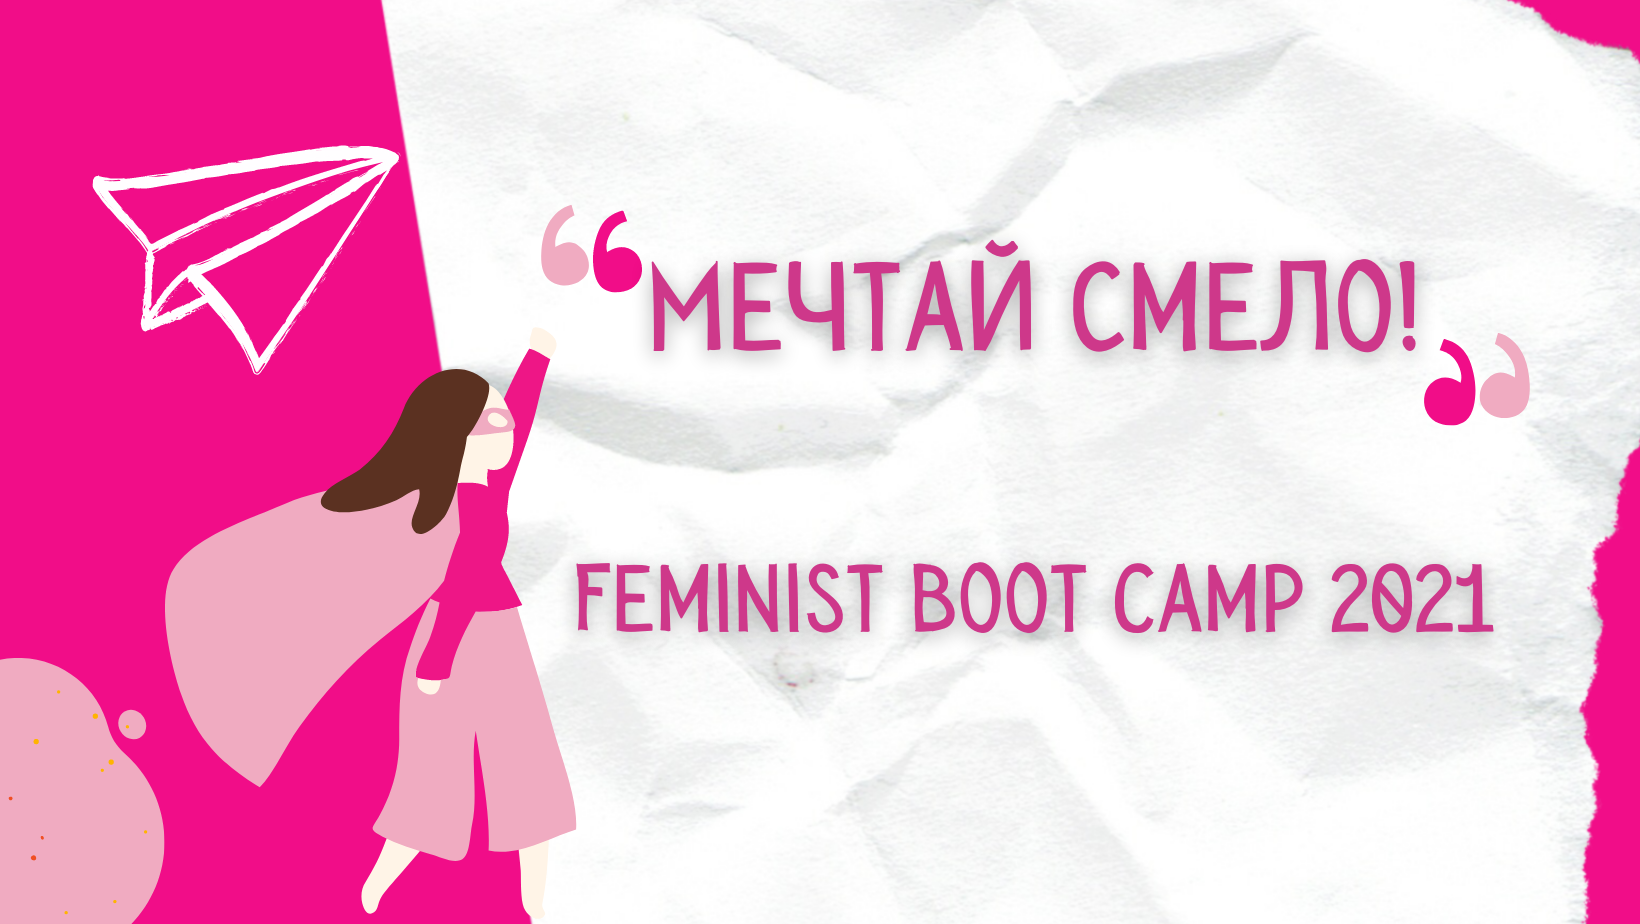 Български фонд за жените набира участнички за Feminist Boot Camp 2021: Мечтай смело!